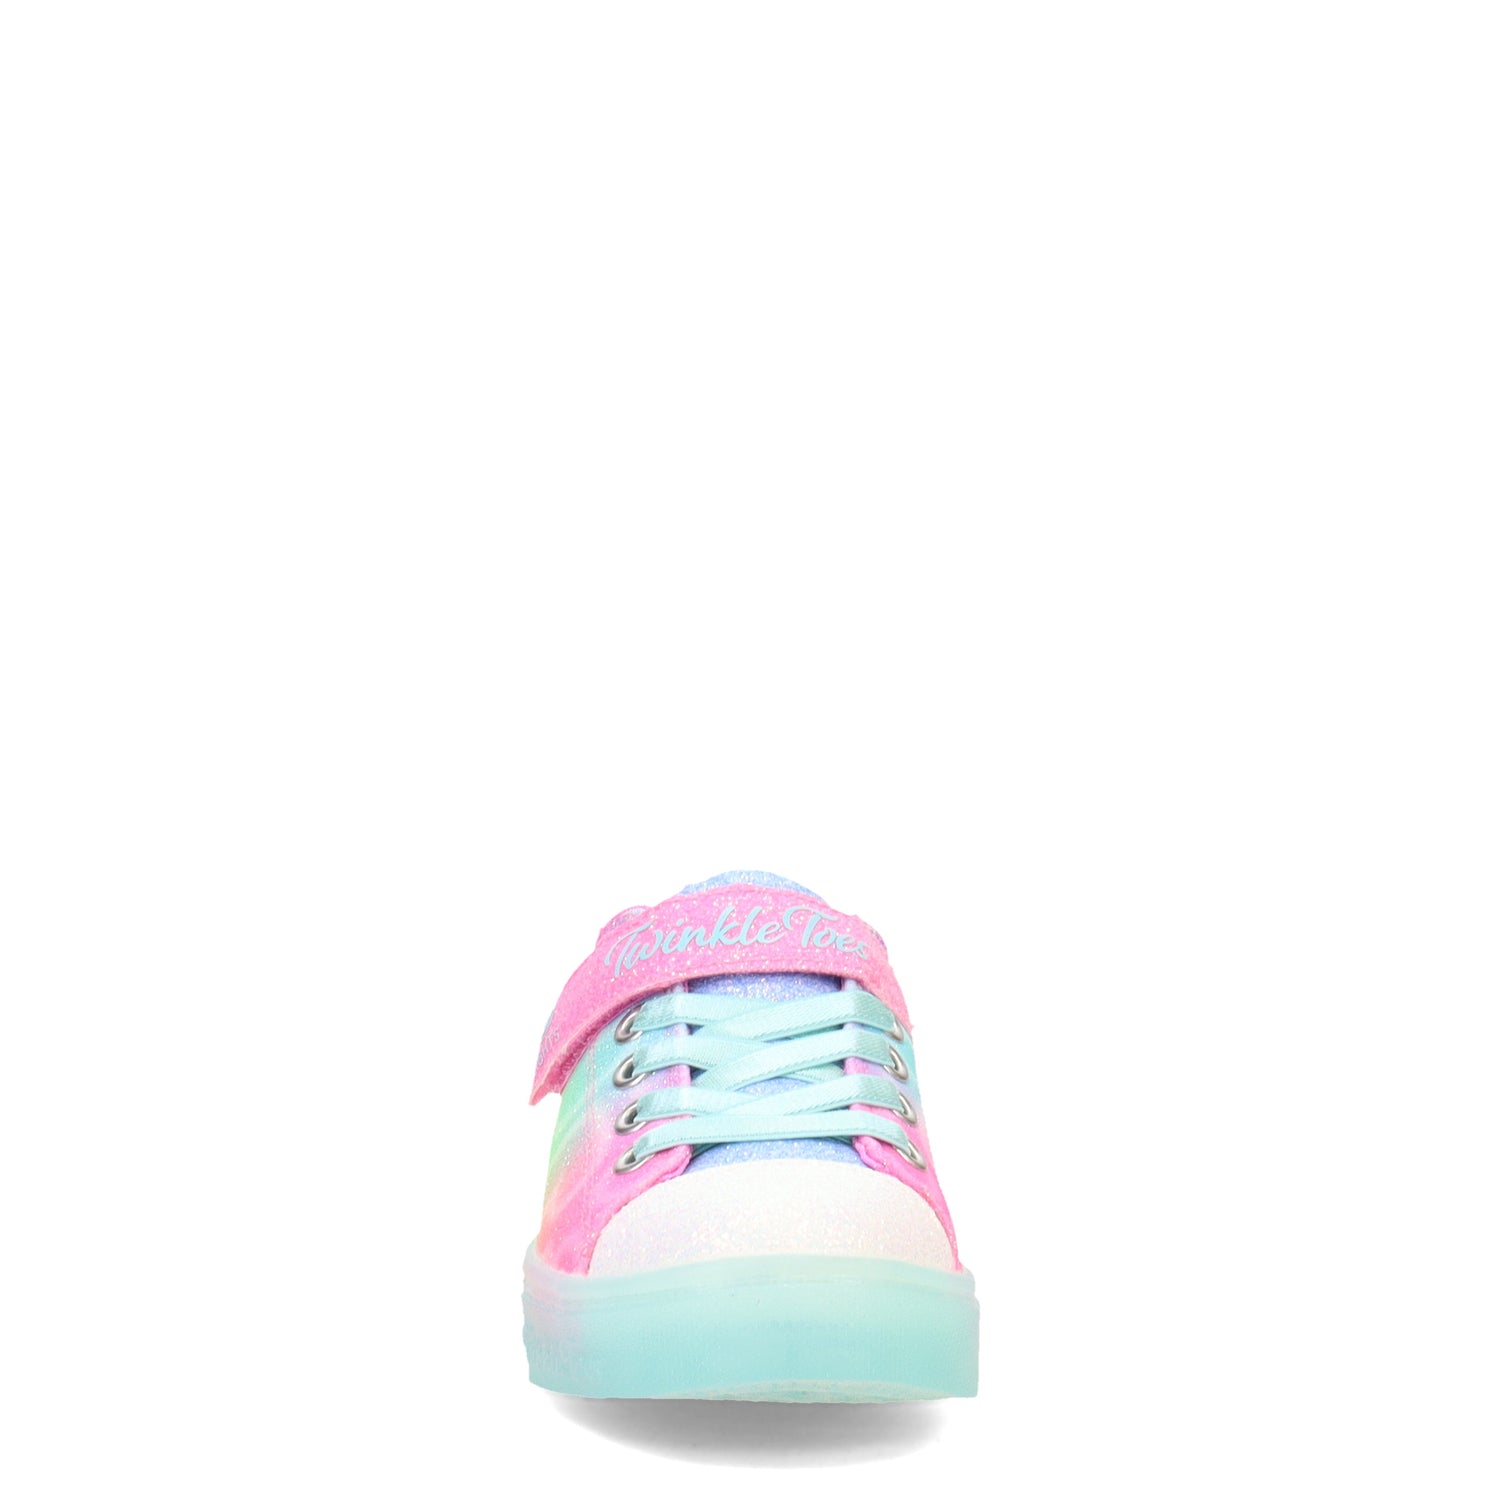 Peltz Shoes  Girl's Skechers Twinkle Sparks Ice - Dreamsicle Sneaker - Little Kid MULTI FABRIC 314782L-MLT